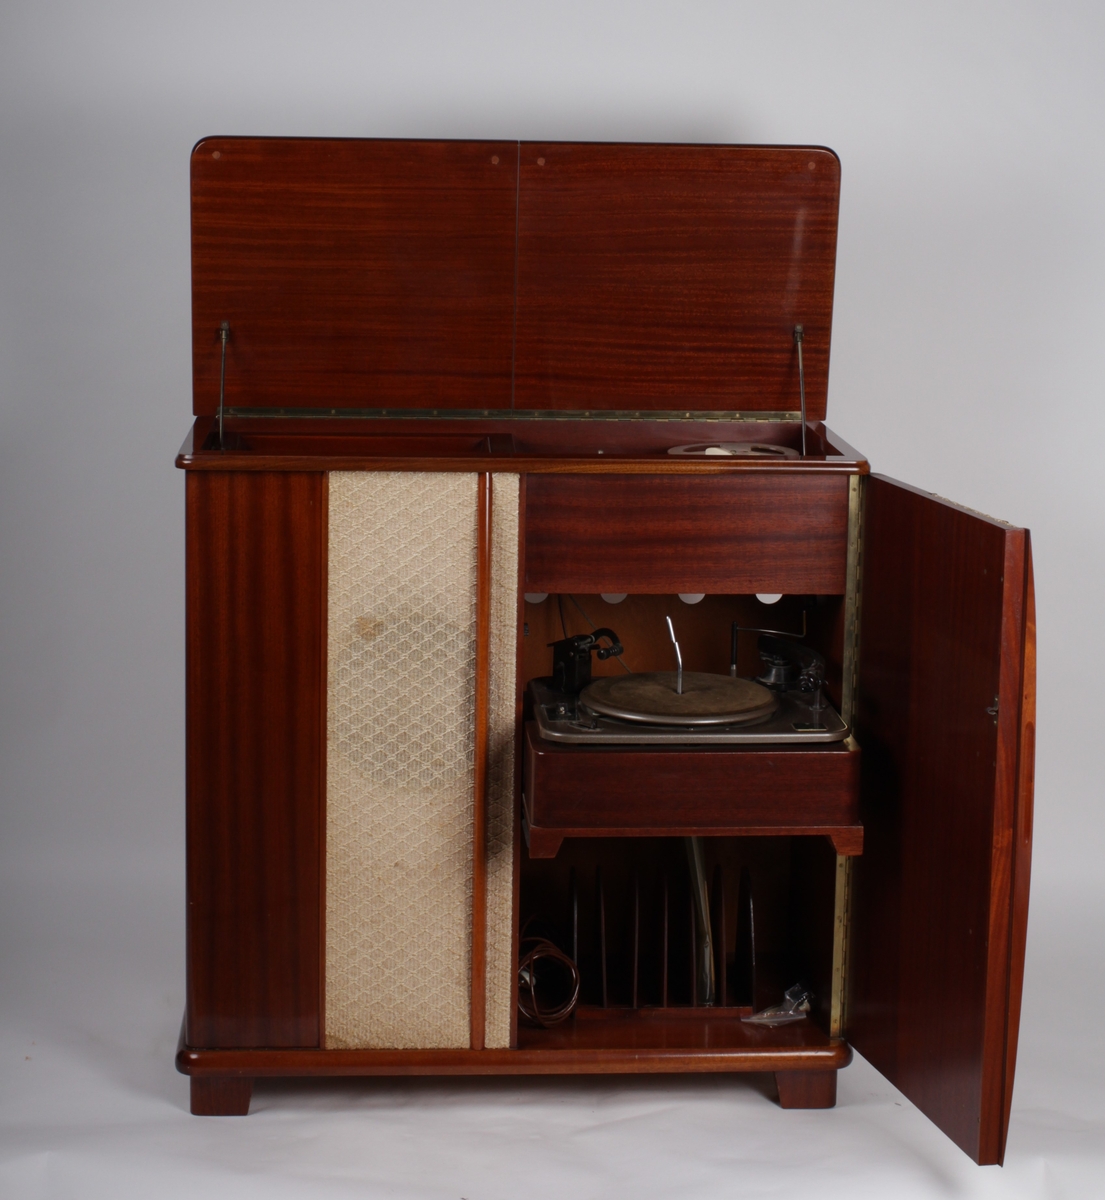 Radionette studio radio-grammofon med båndopptaker. I tre med tekstilfront. Grammofon under toppplate